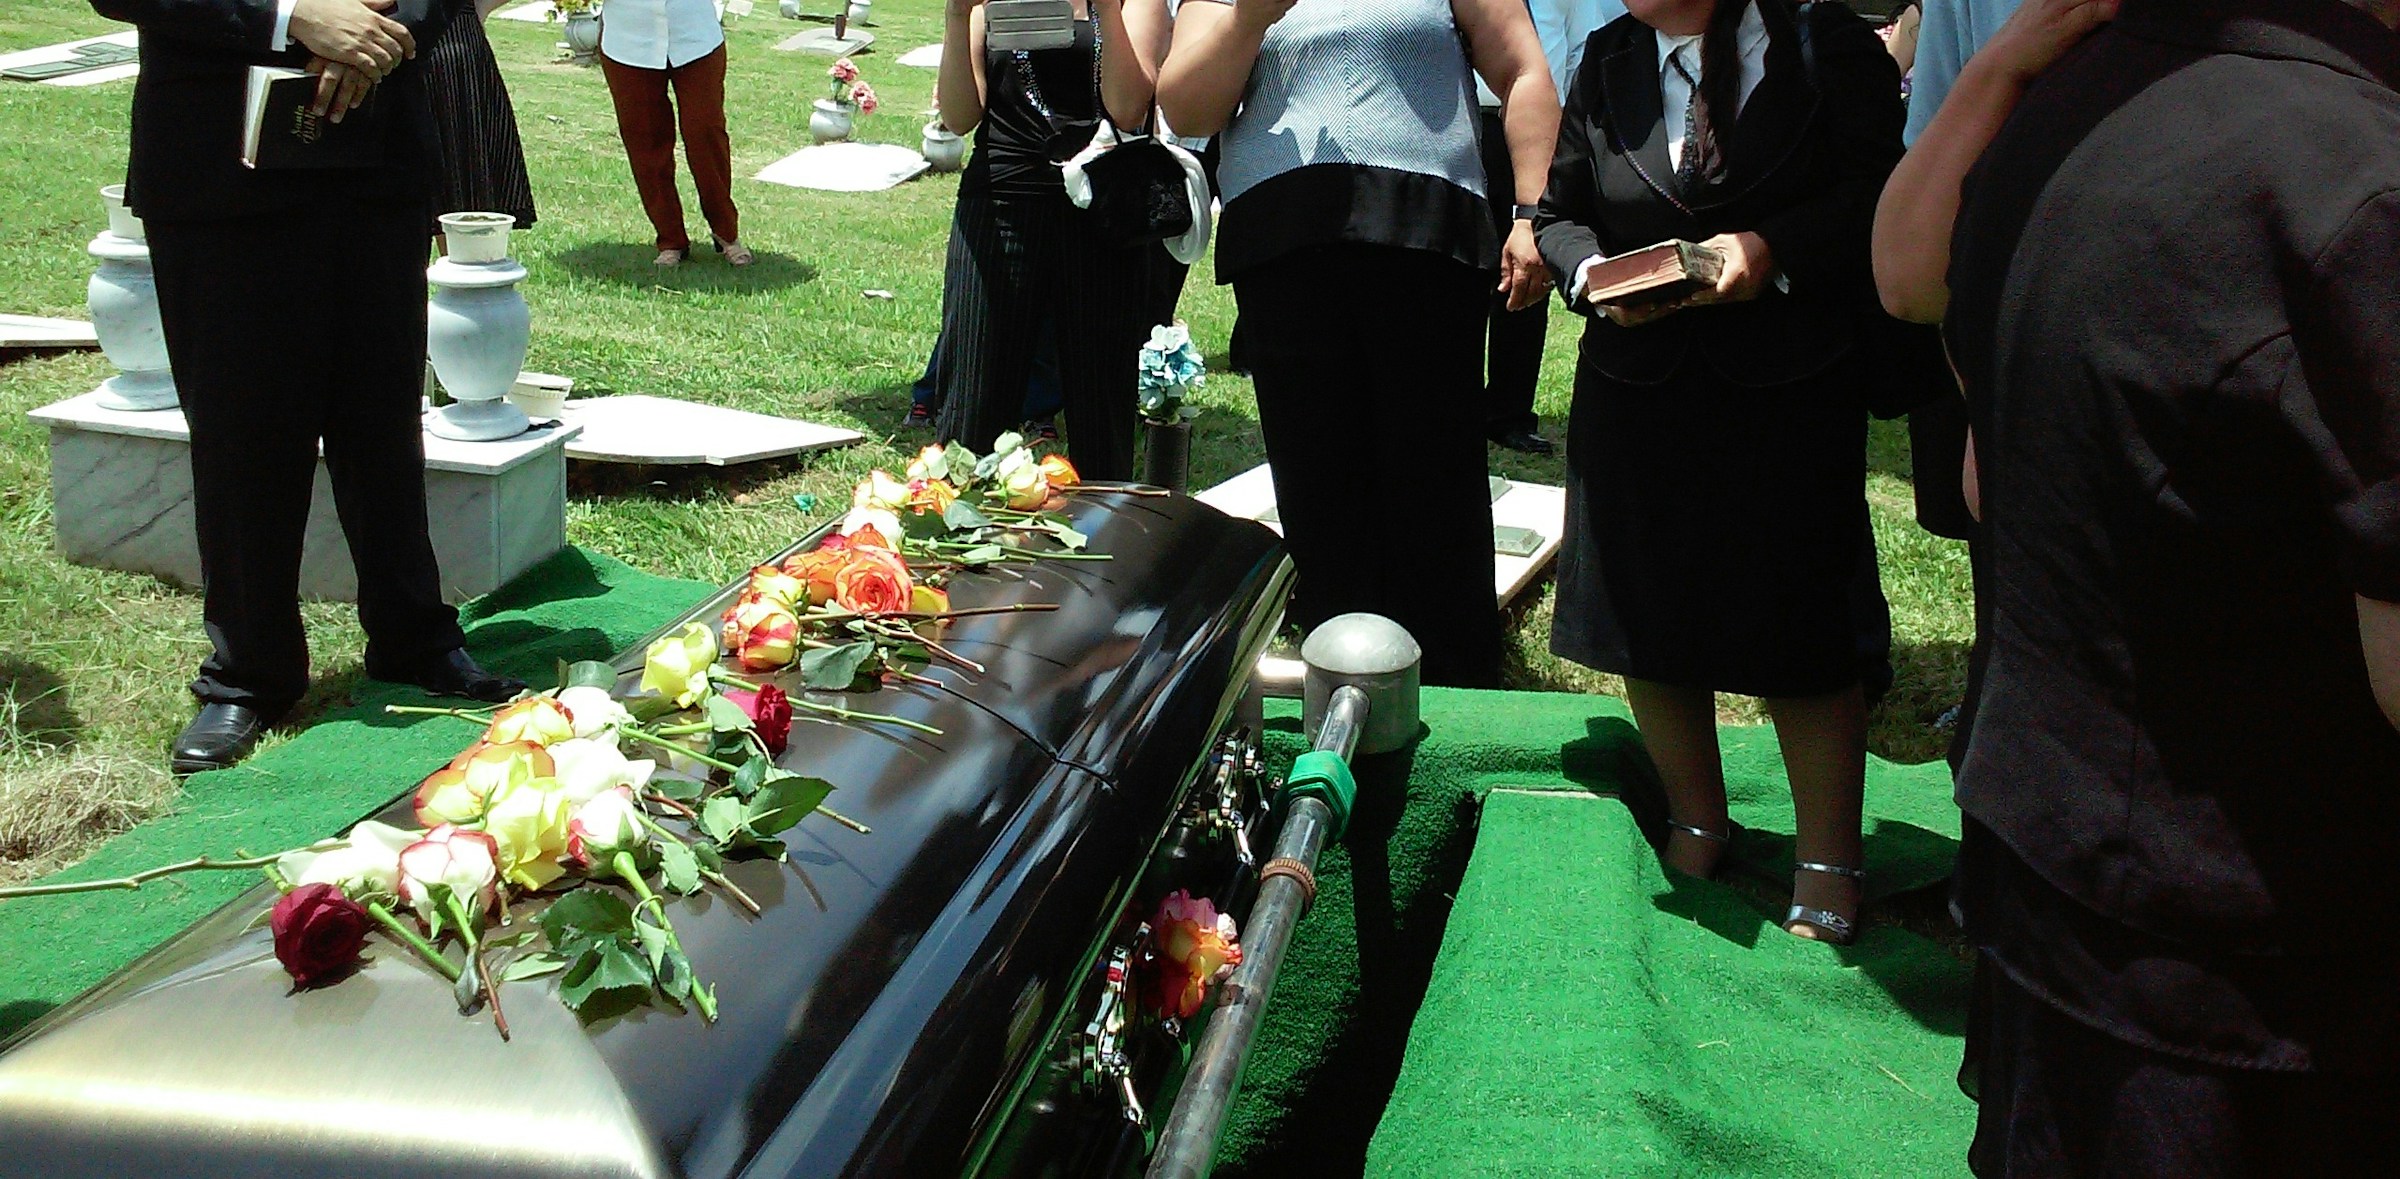 Personnes assistant à un enterrement | Source : Unsplash